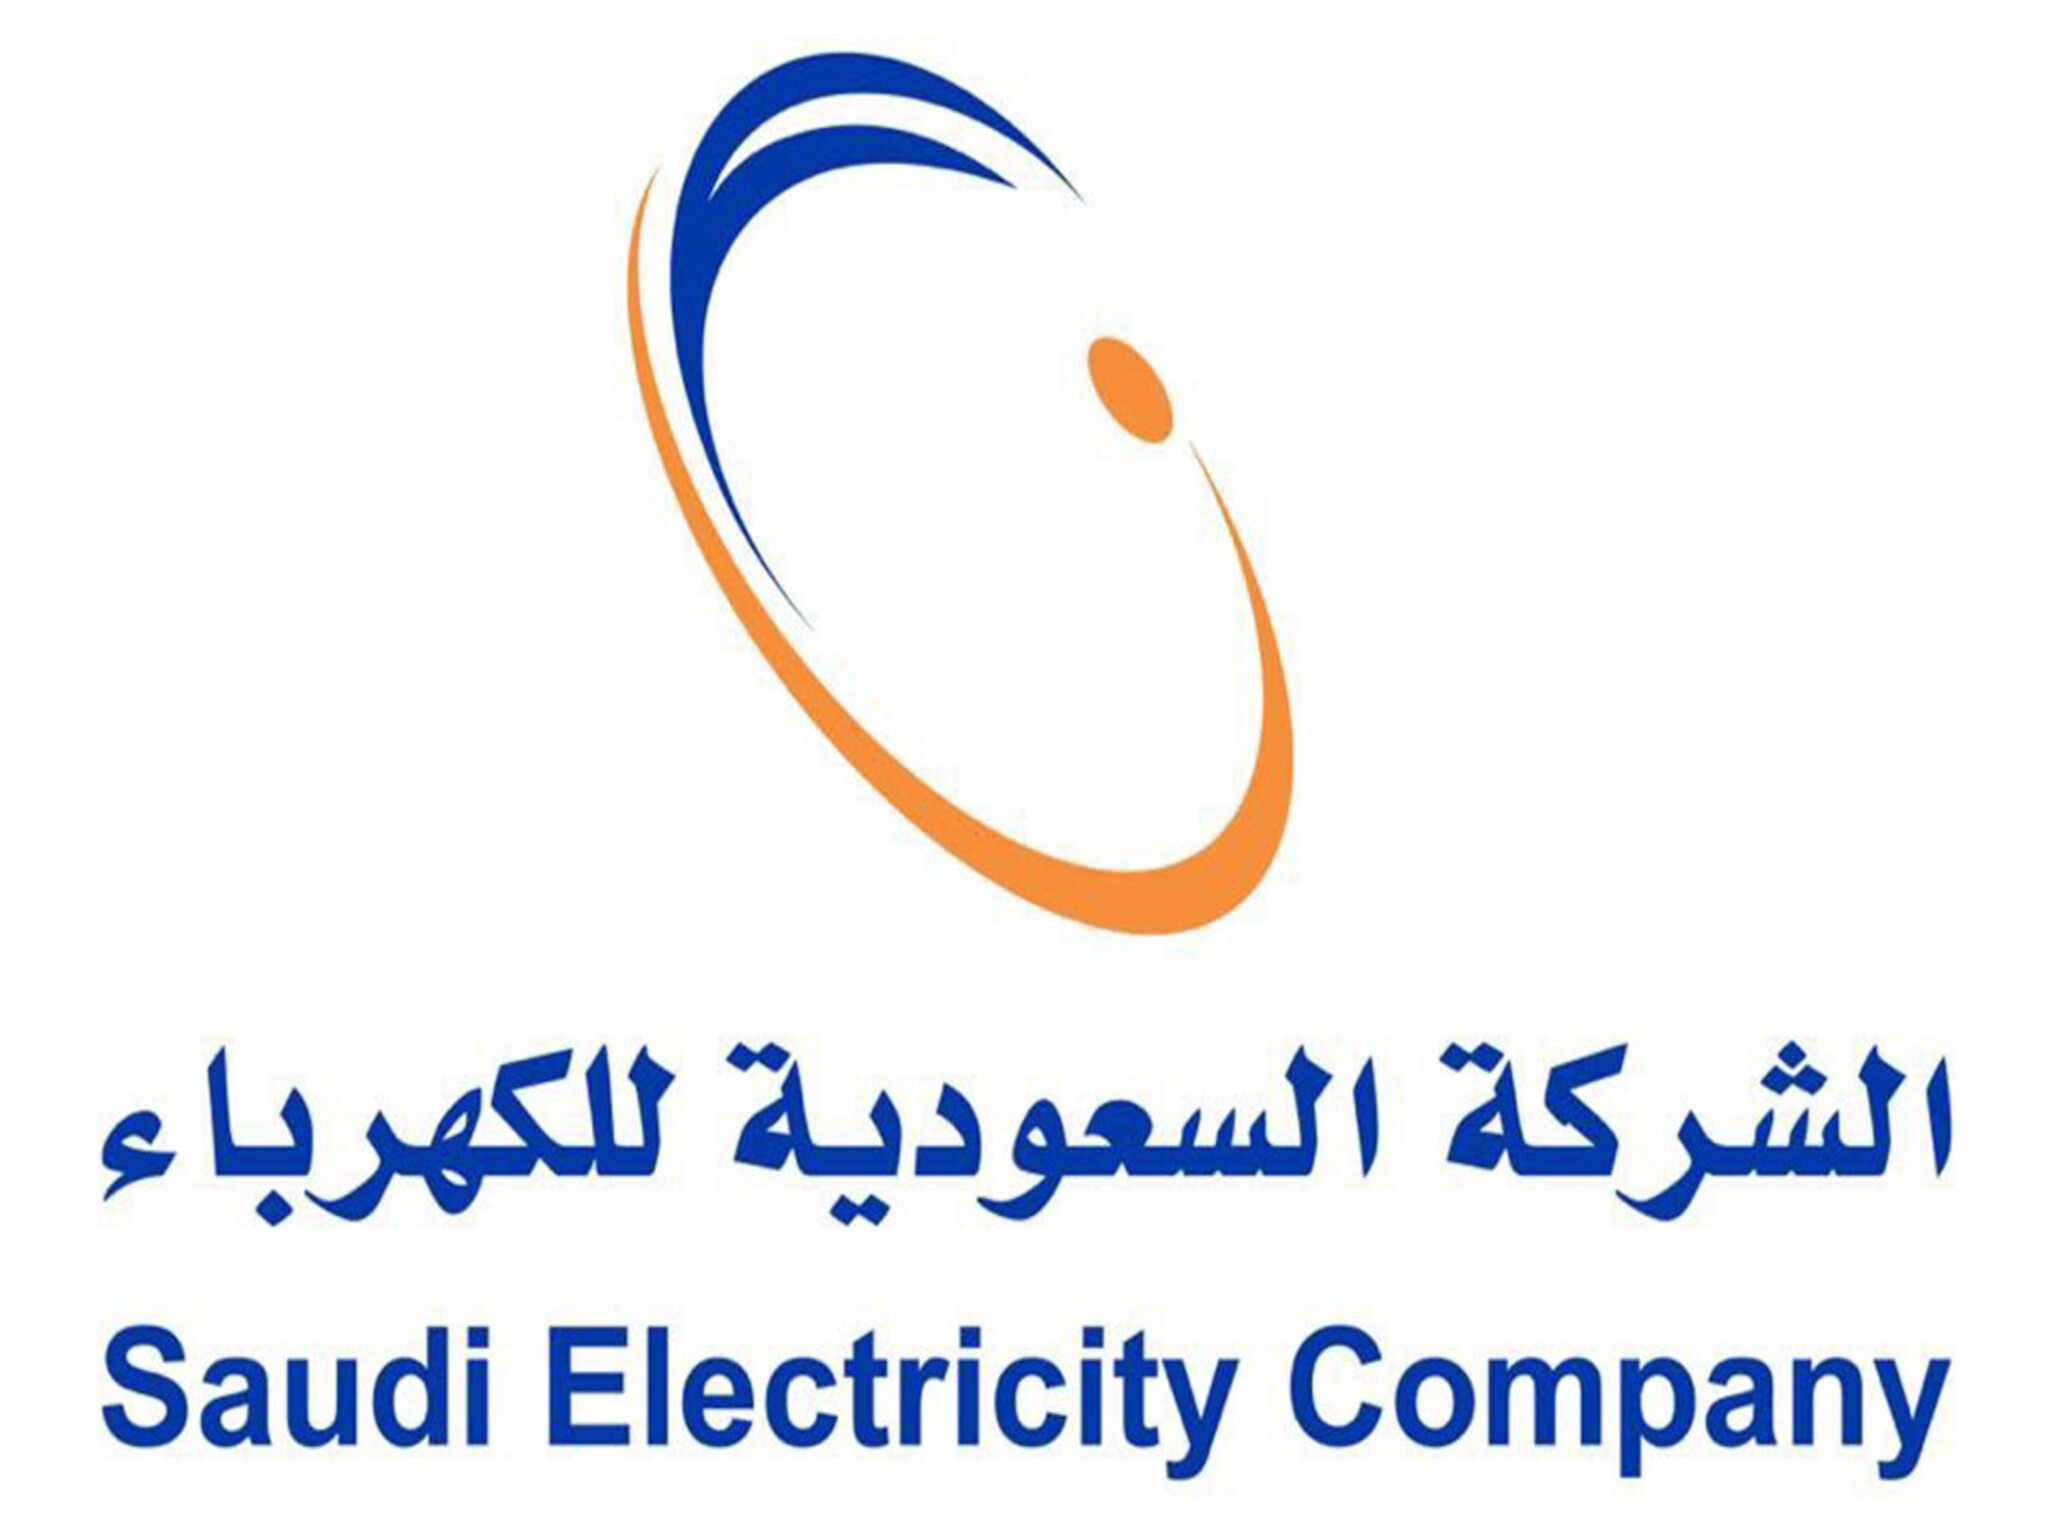 رقم شركة الكهرباء السعودية الموحد المجاني وطرق التواصل للشكاوى والاستفسارات